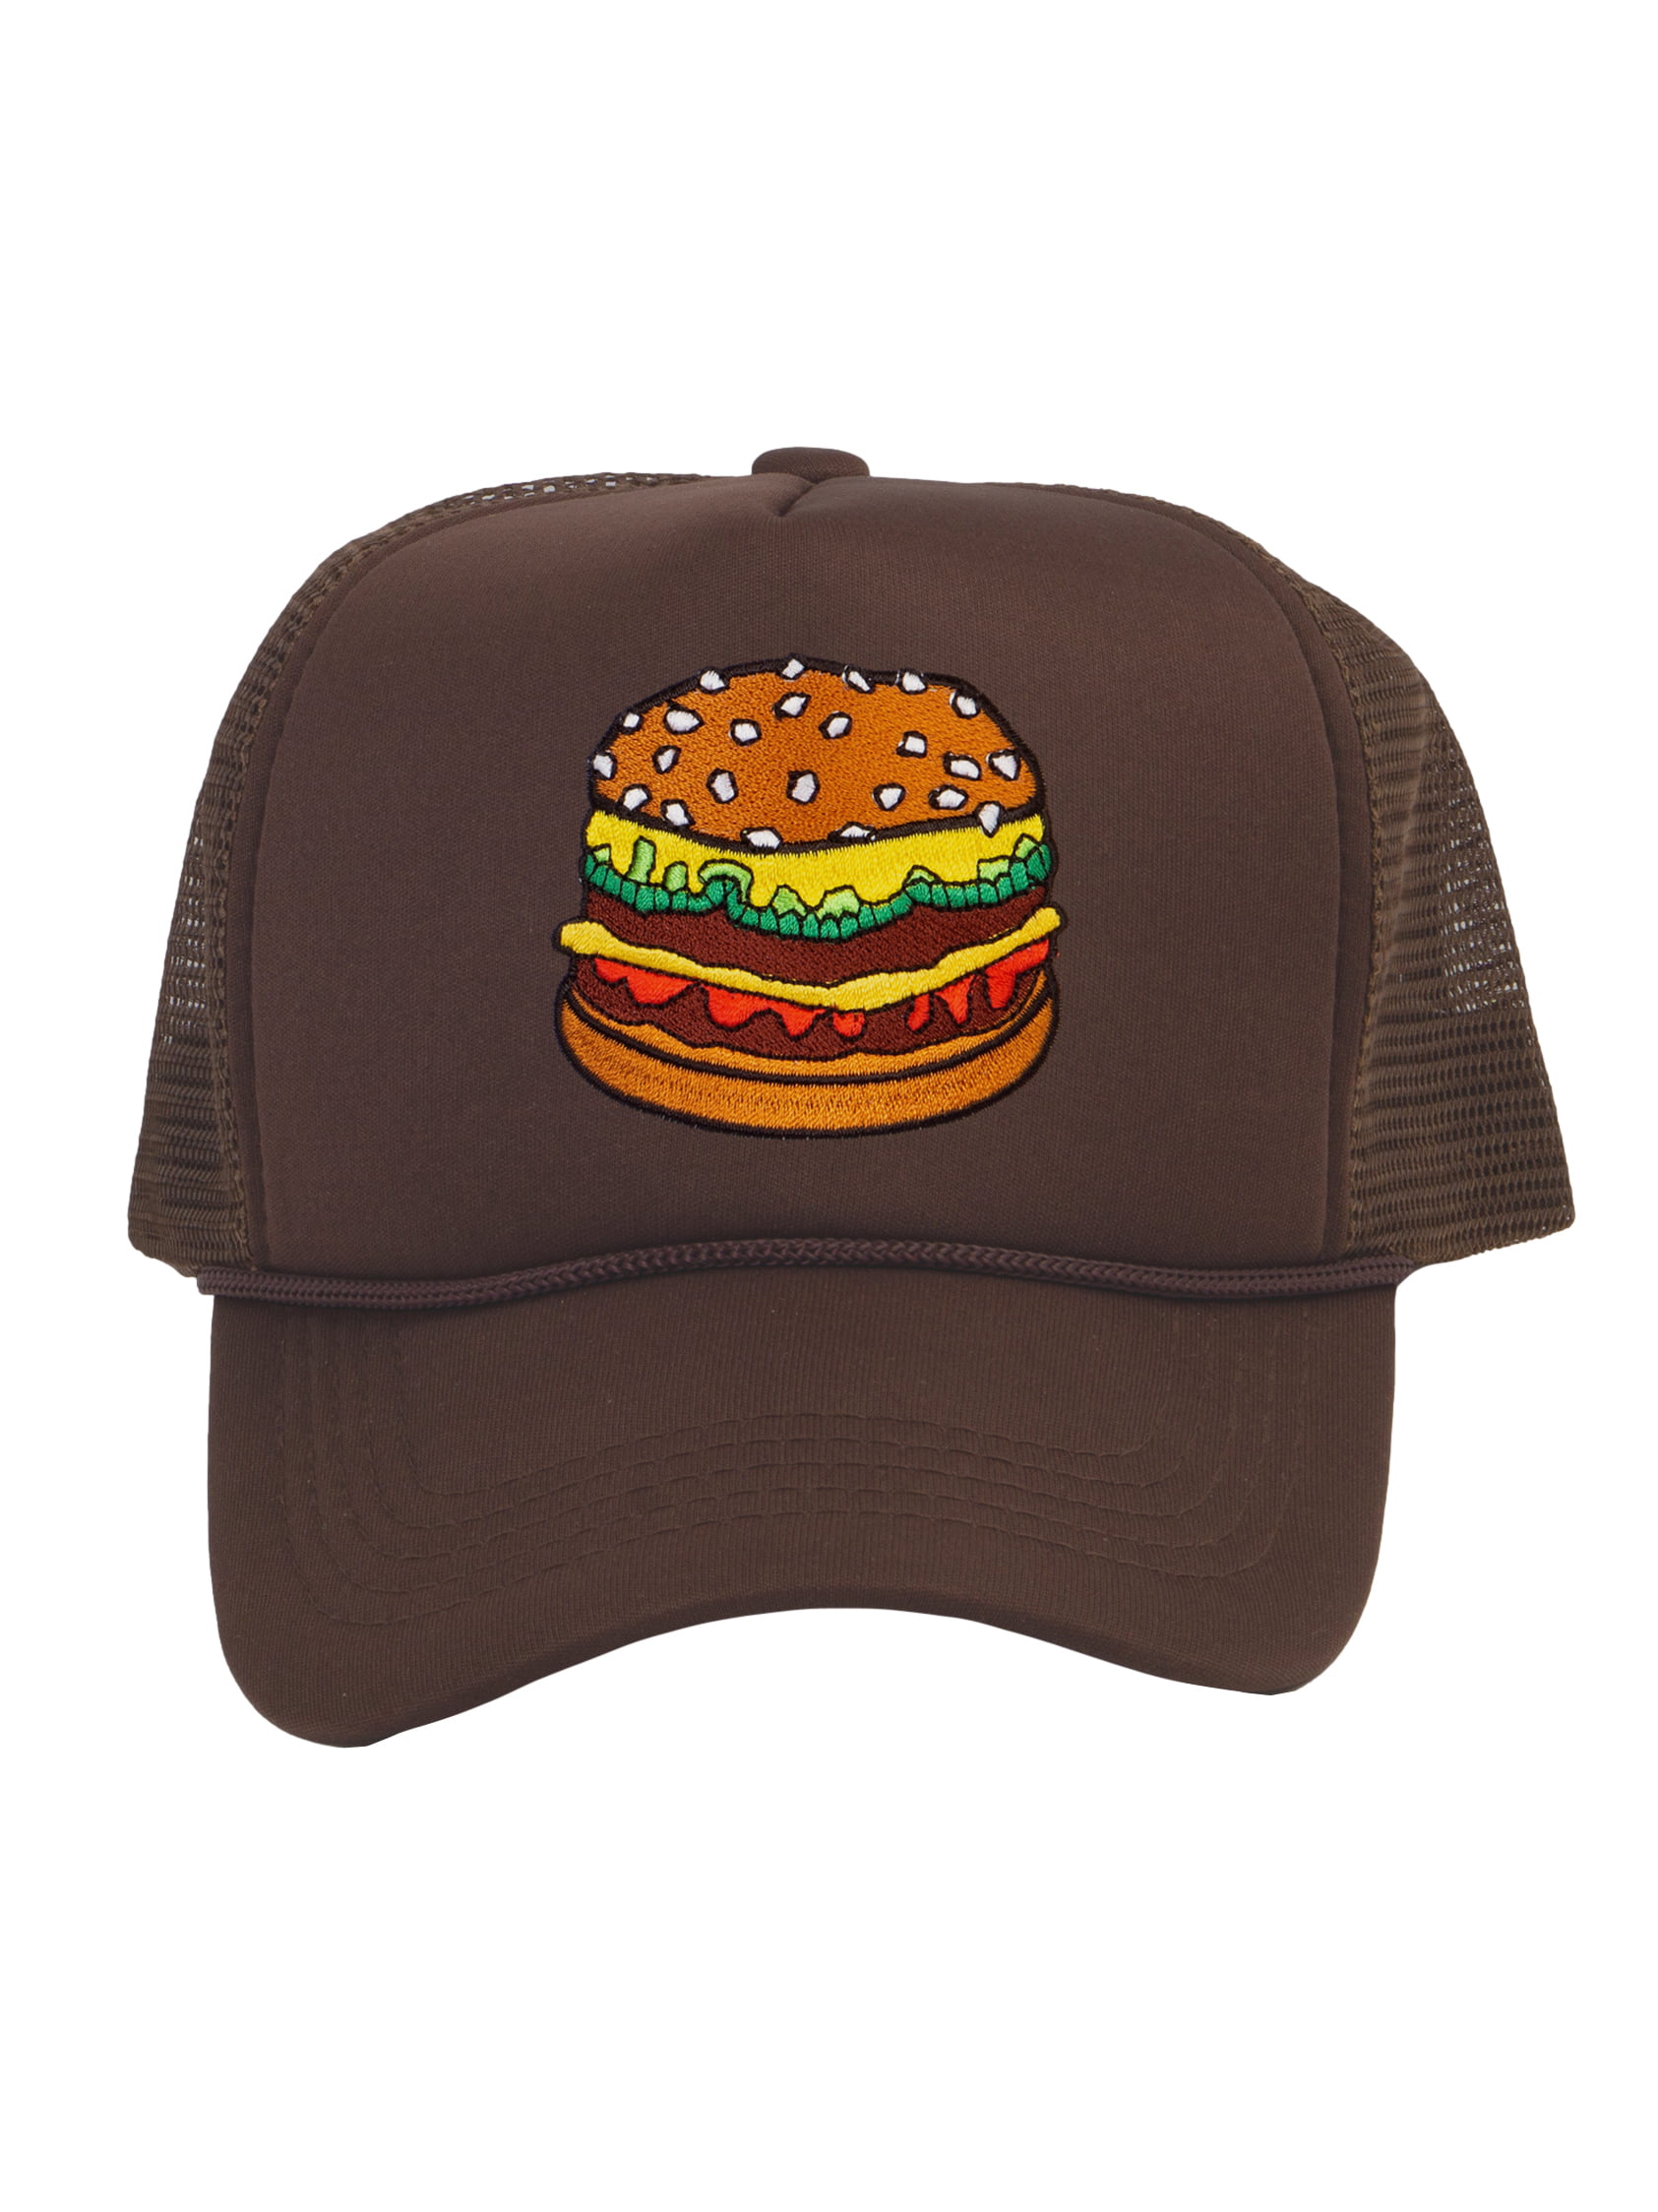 Top Headwear Hamburger Cheeseburger Trucker Hat - Men's Snapback Burger  Food Cap Black